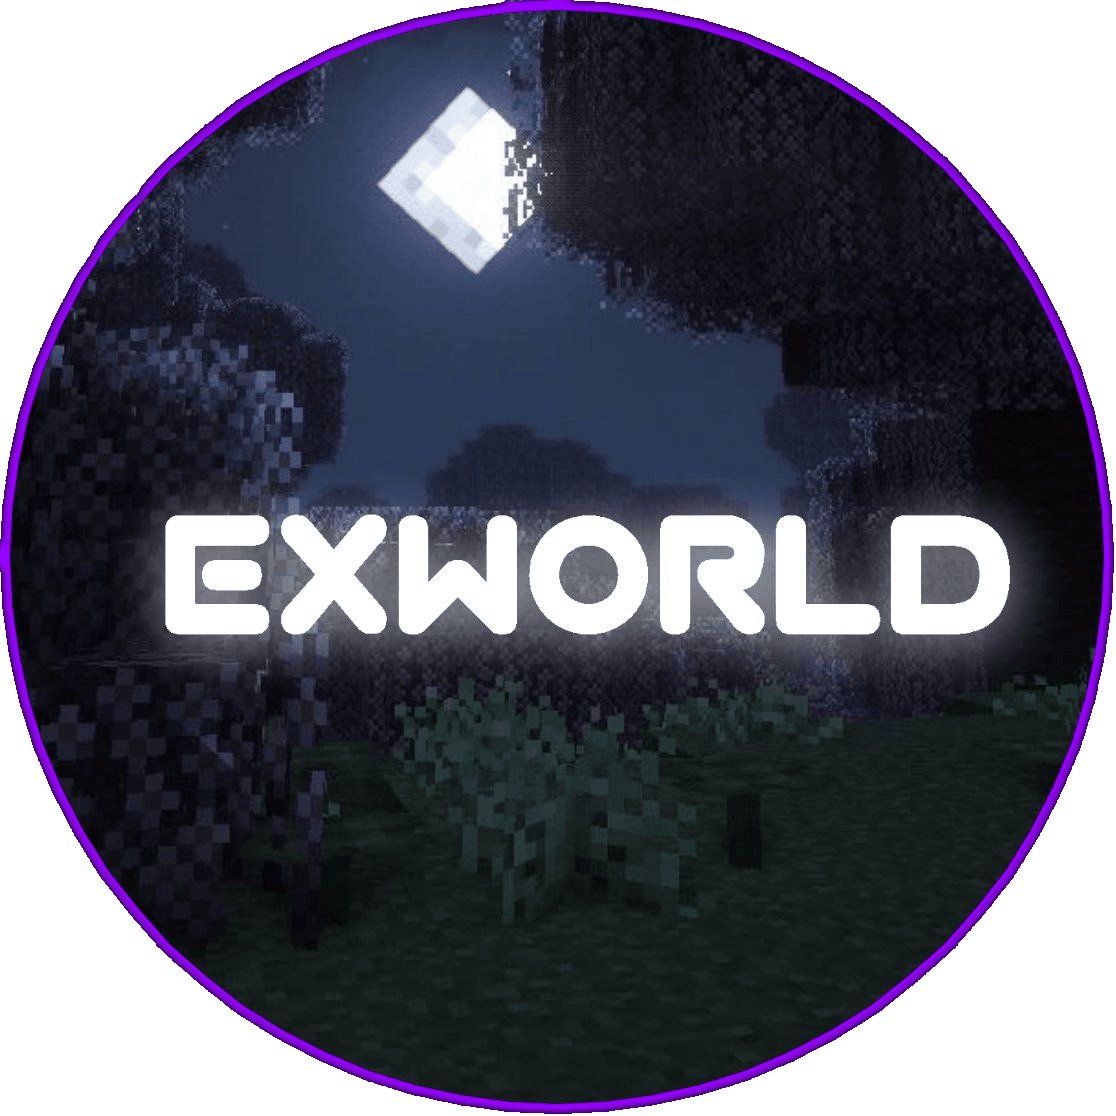 ExWorld